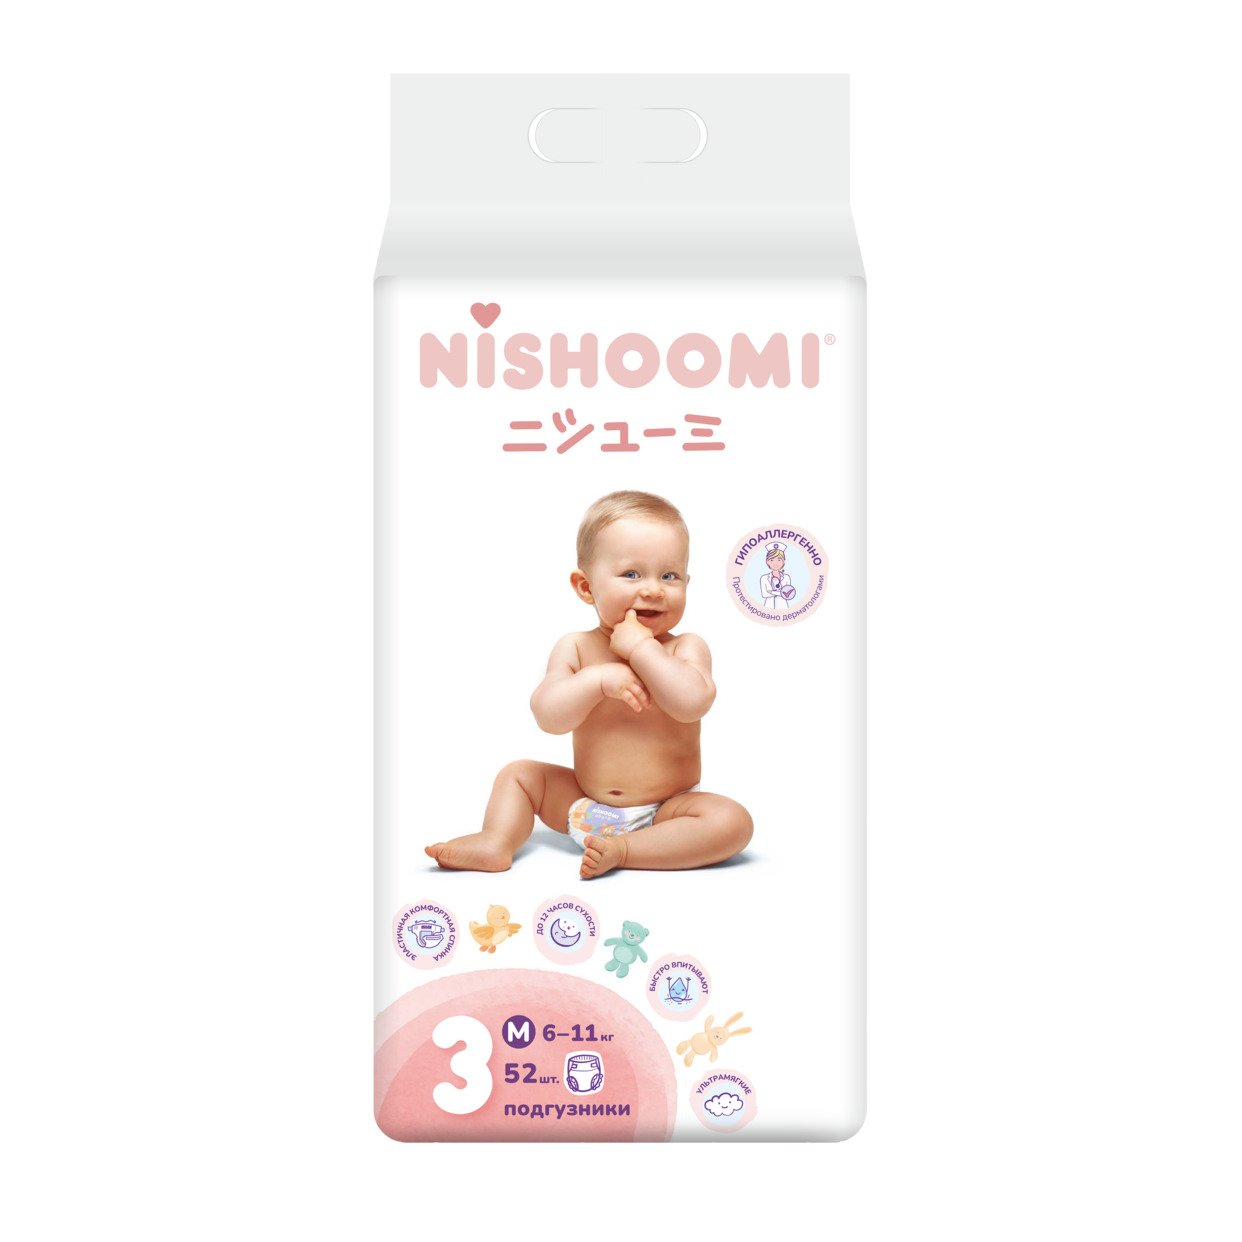 Изделия санитарно-гигиенические разового использования для ухода за детьми Nishoomi подгузники детские одноразовые. Размер Макси (М (3)), для детей весом 6-11 кг, 52 штуки в уп.